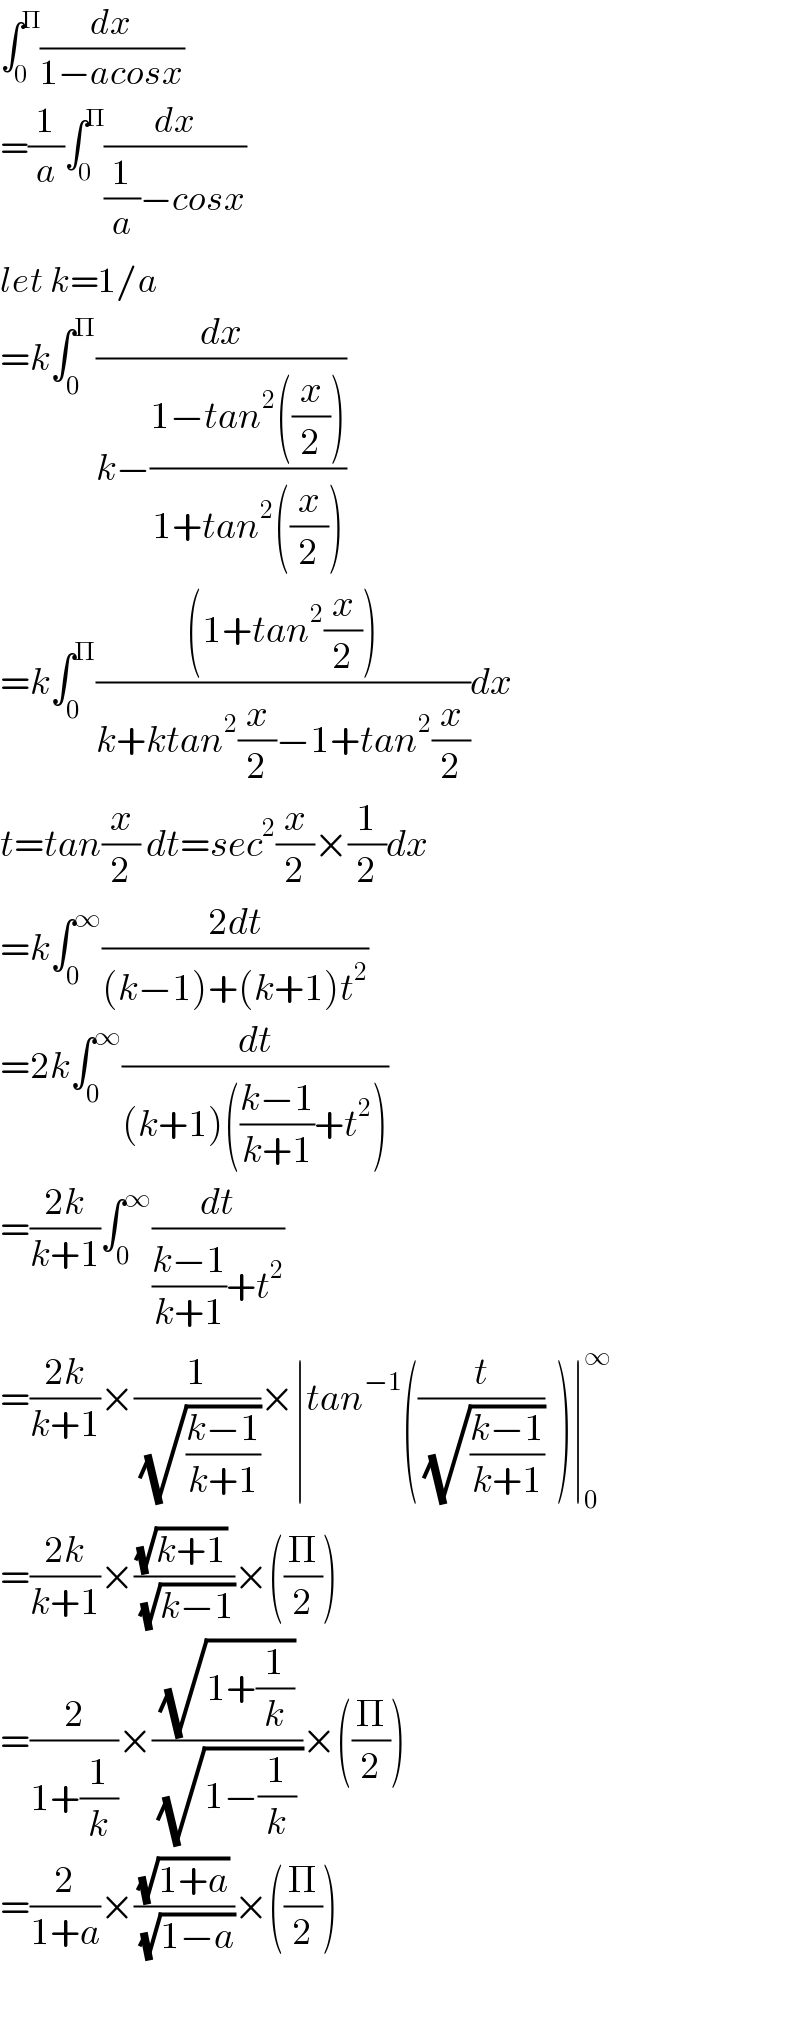 ∫_0 ^Π (dx/(1−acosx))  =(1/a)∫_0 ^Π (dx/((1/a)−cosx))  let k=1/a  =k∫_0 ^Π (dx/(k−((1−tan^2 ((x/2)))/(1+tan^2 ((x/2))))))  =k∫_0 ^Π (((1+tan^2 (x/2)))/(k+ktan^2 (x/2)−1+tan^2 (x/2)))dx  t=tan(x/2) dt=sec^2 (x/2)×(1/2)dx  =k∫_0 ^∞ ((2dt)/((k−1)+(k+1)t^2 ))  =2k∫_0 ^∞ (dt/((k+1)(((k−1)/(k+1))+t^2 )))  =((2k)/(k+1))∫_0 ^∞ (dt/(((k−1)/(k+1))+t^2 ))  =((2k)/(k+1))×(1/(√((k−1)/(k+1))))×∣tan^(−1) ((t/(√((k−1)/(k+1))))  )∣_0 ^∞   =((2k)/(k+1))×(((√(k+1)) )/(√(k−1)))×((Π/2))  =(2/(1+(1/k)))×((√(1+(1/k)))/(√(1−(1/k) )))×((Π/2))    =(2/(1+a))×((√(1+a))/(√(1−a)))×((Π/2))     